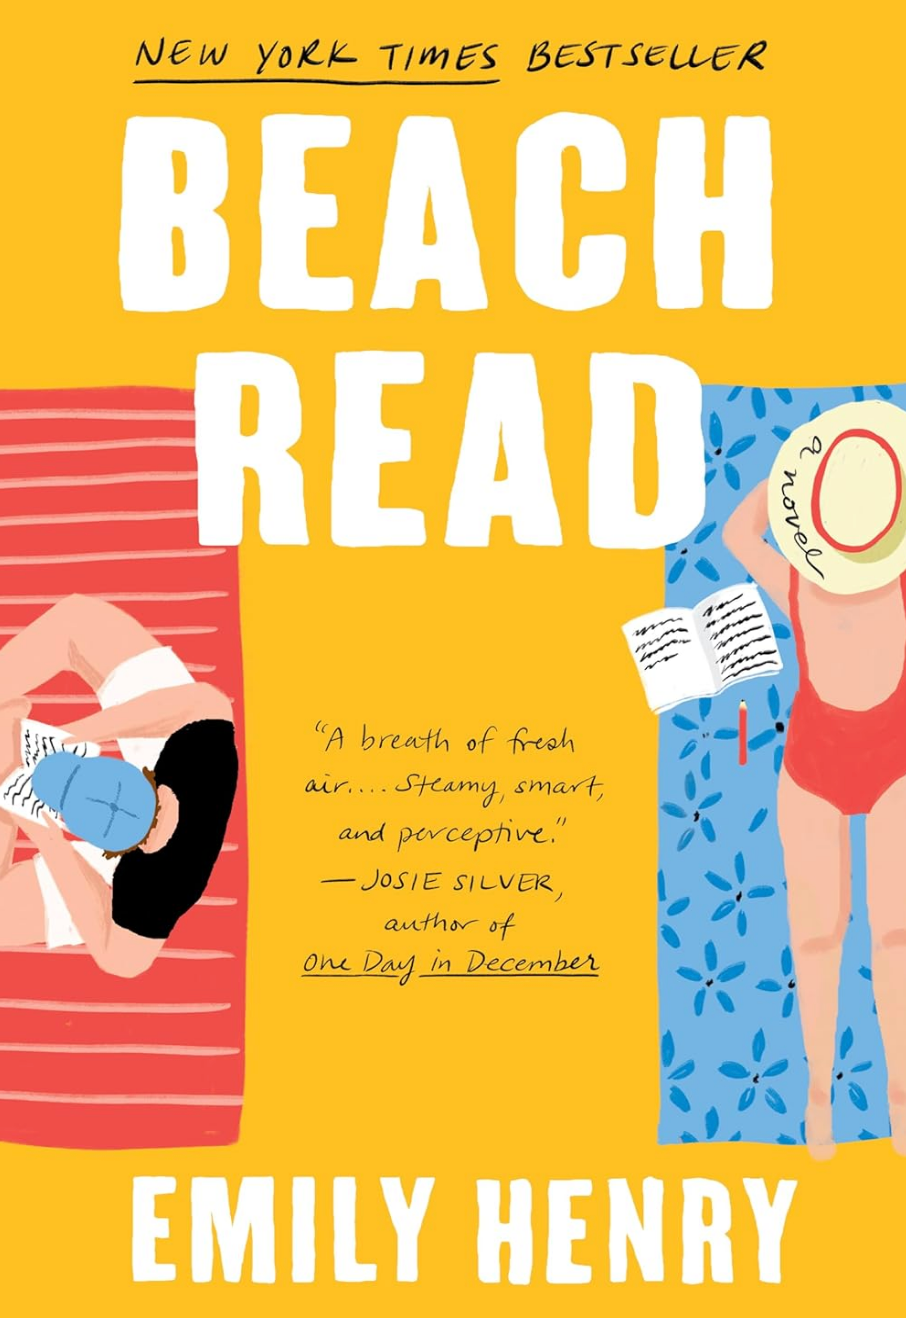 Book cover: "Beach Read."